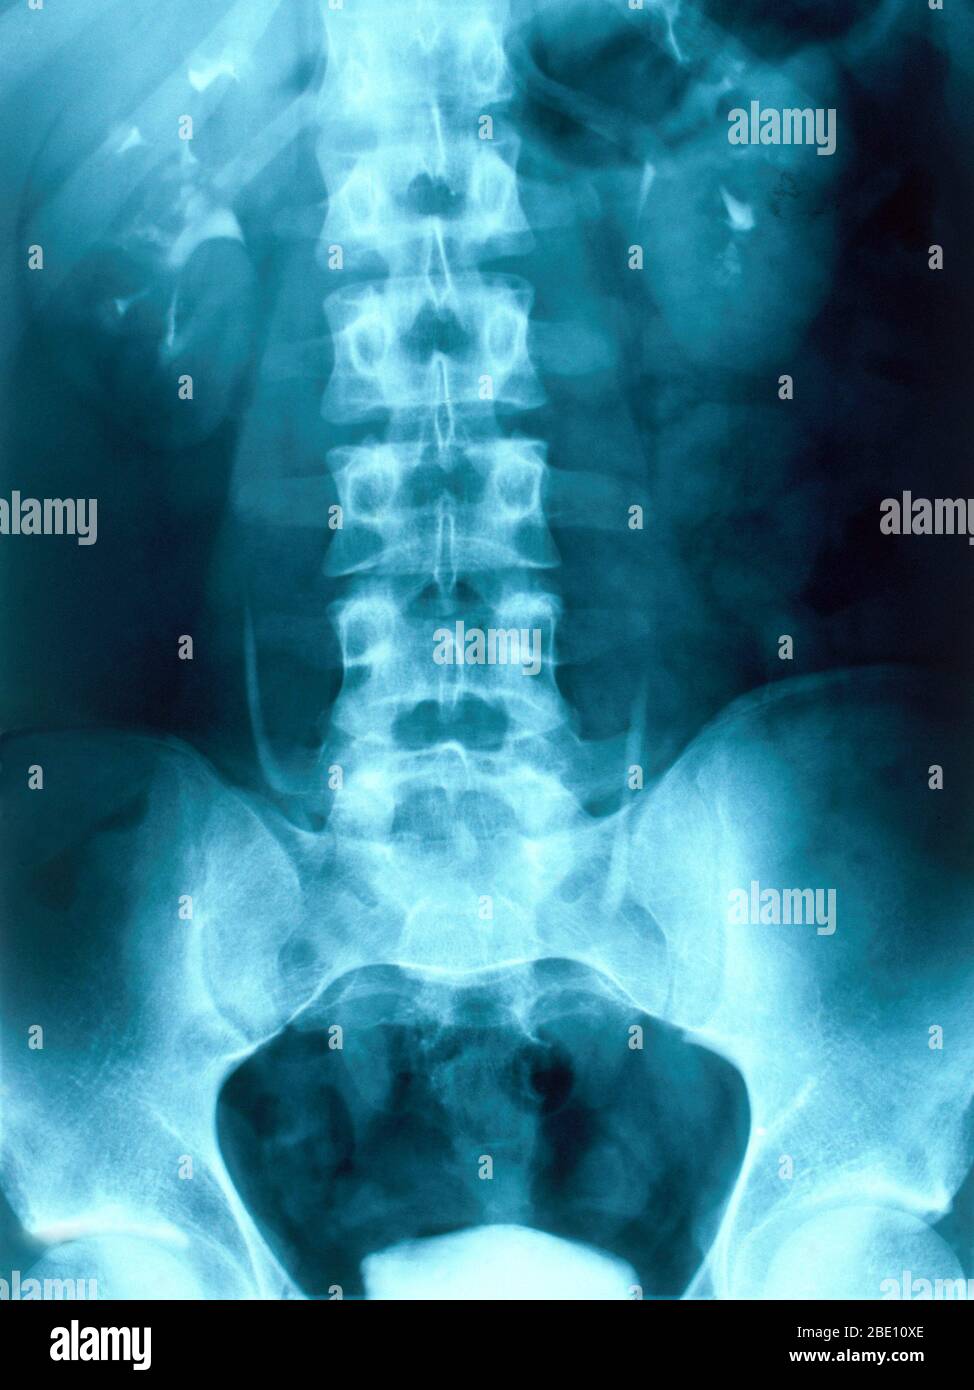 Radiografía que muestra riñones humanos normales. La función primaria del riñón es mantener el equilibrio homeostático de los fluidos corporales. Foto de stock